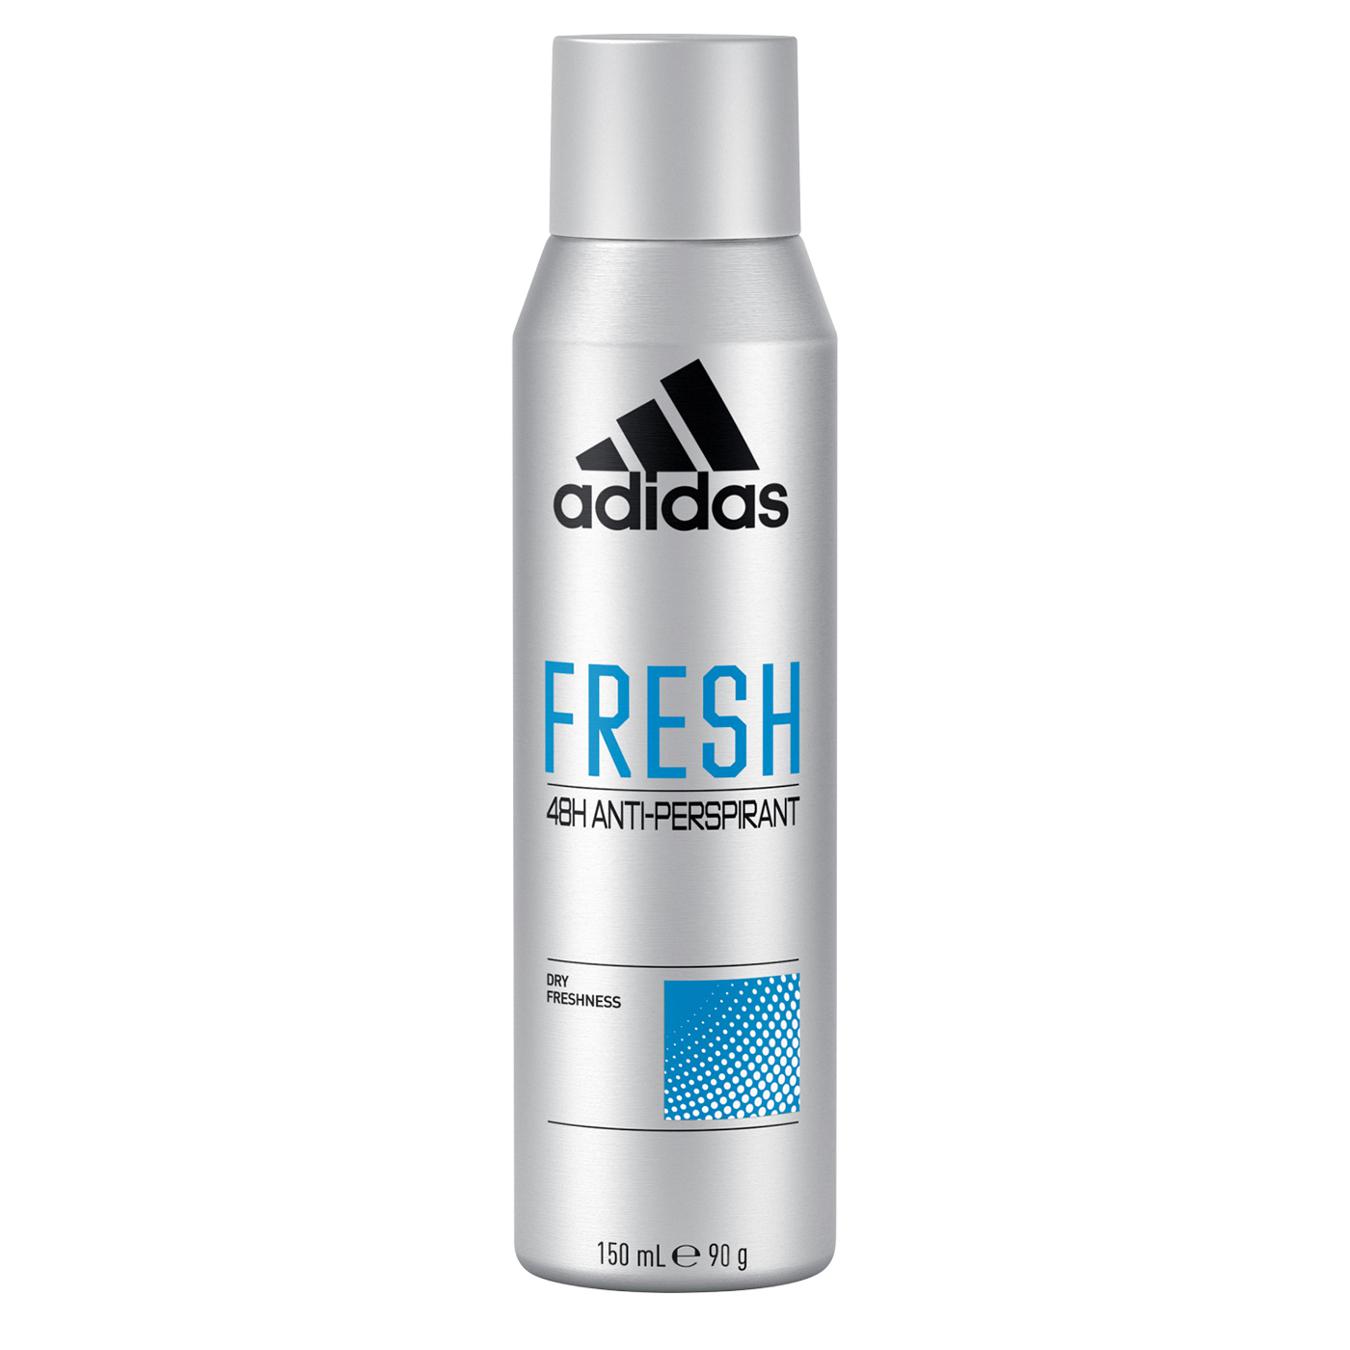 Adidas fresh deodorant spray for men 150 ml